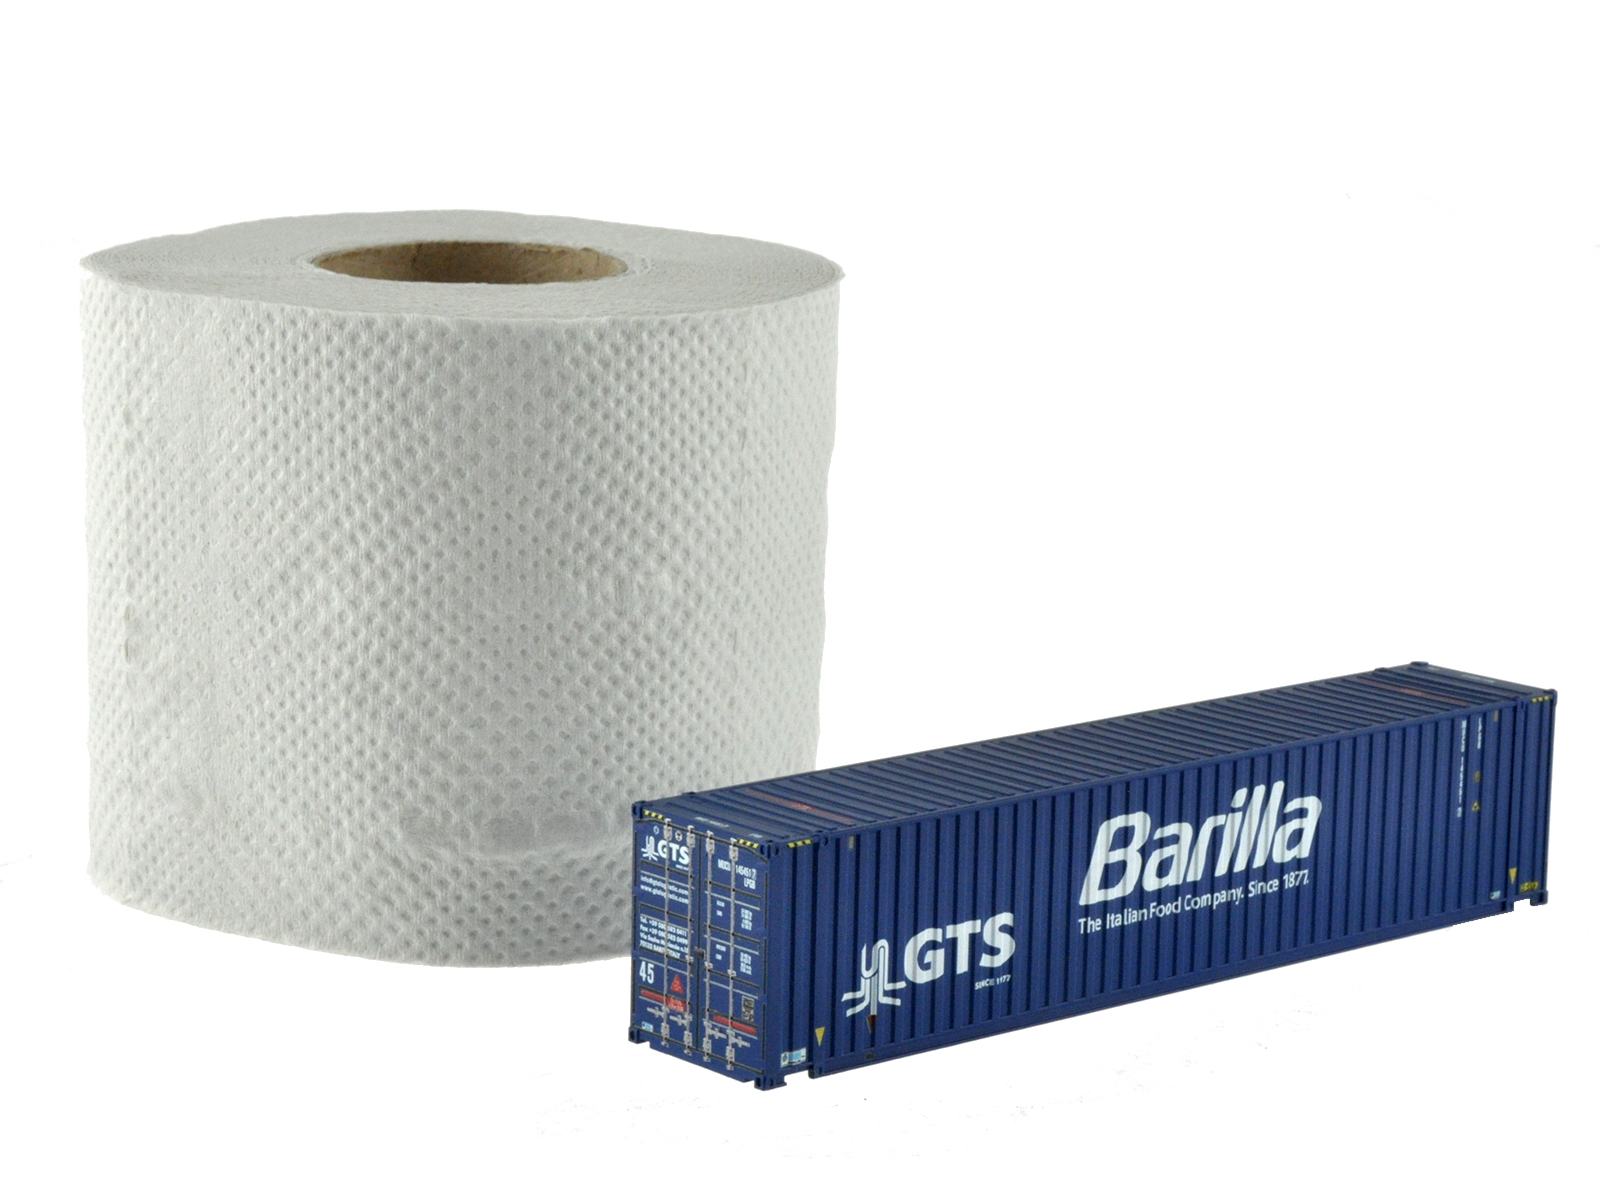 1:87 45´ Container G.T.S.+BAR blau, neues Logo (weiß-weiß) + Barilla (Nudelzug, Fontevivo-Ulm), WB-A /Ct 45´ (Euro), # MUCU 145451